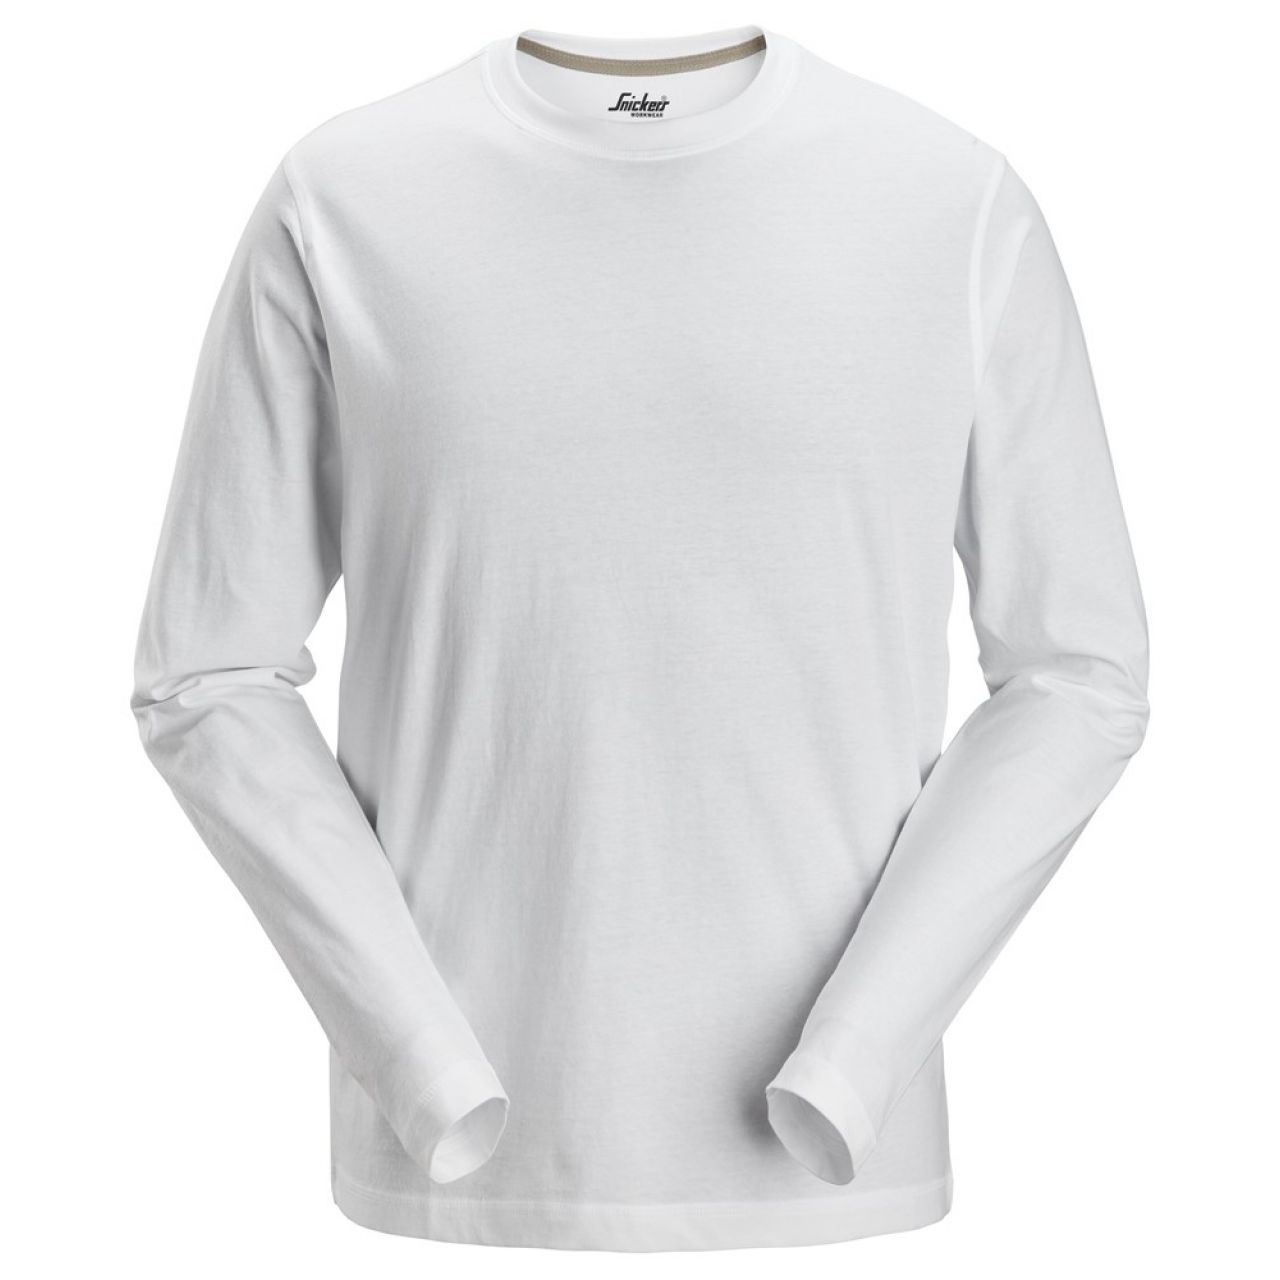 2496 Camiseta de manga larga blanco talla XL